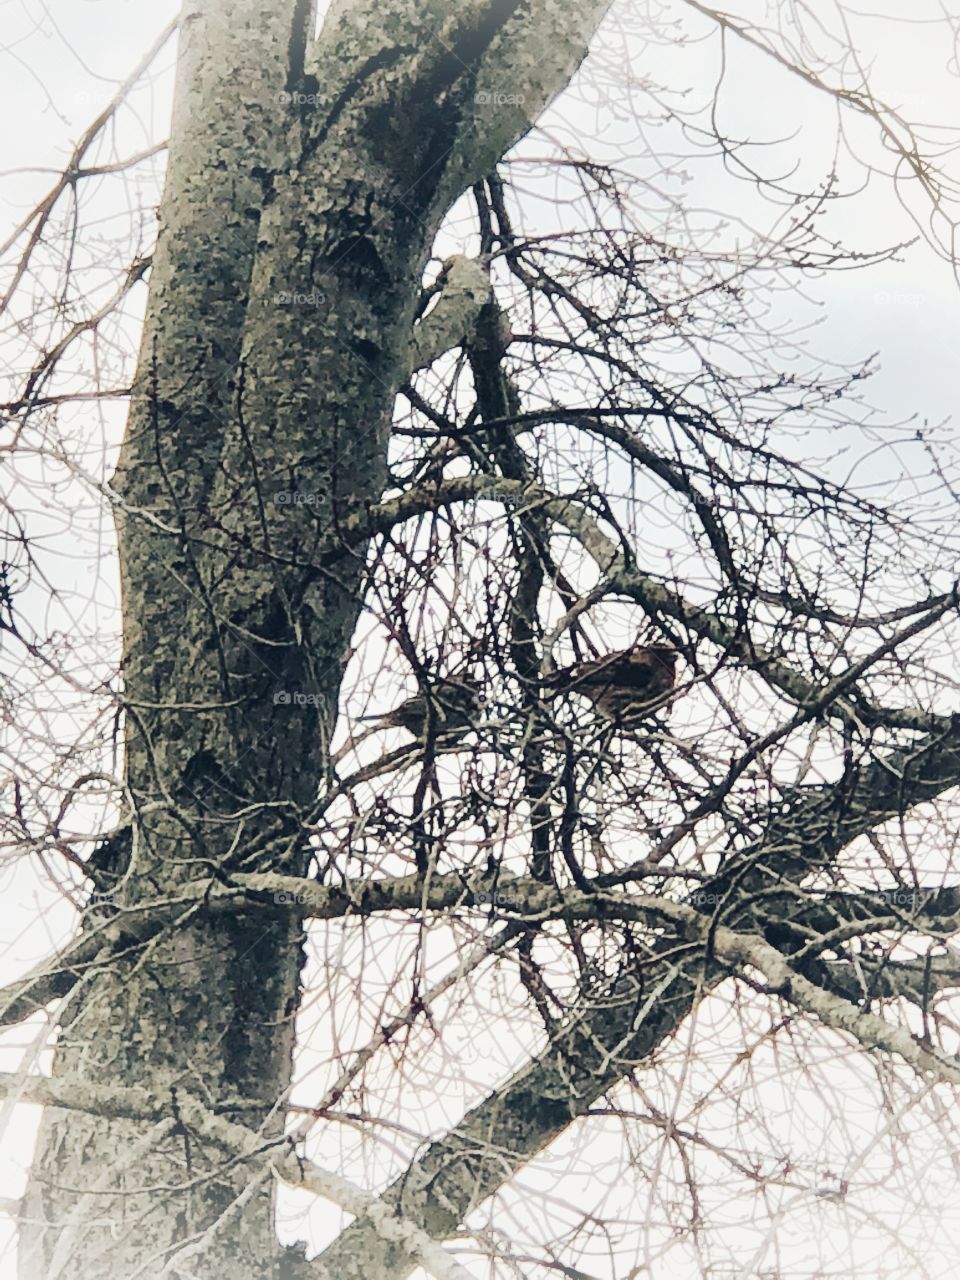 Birds in tree in winter